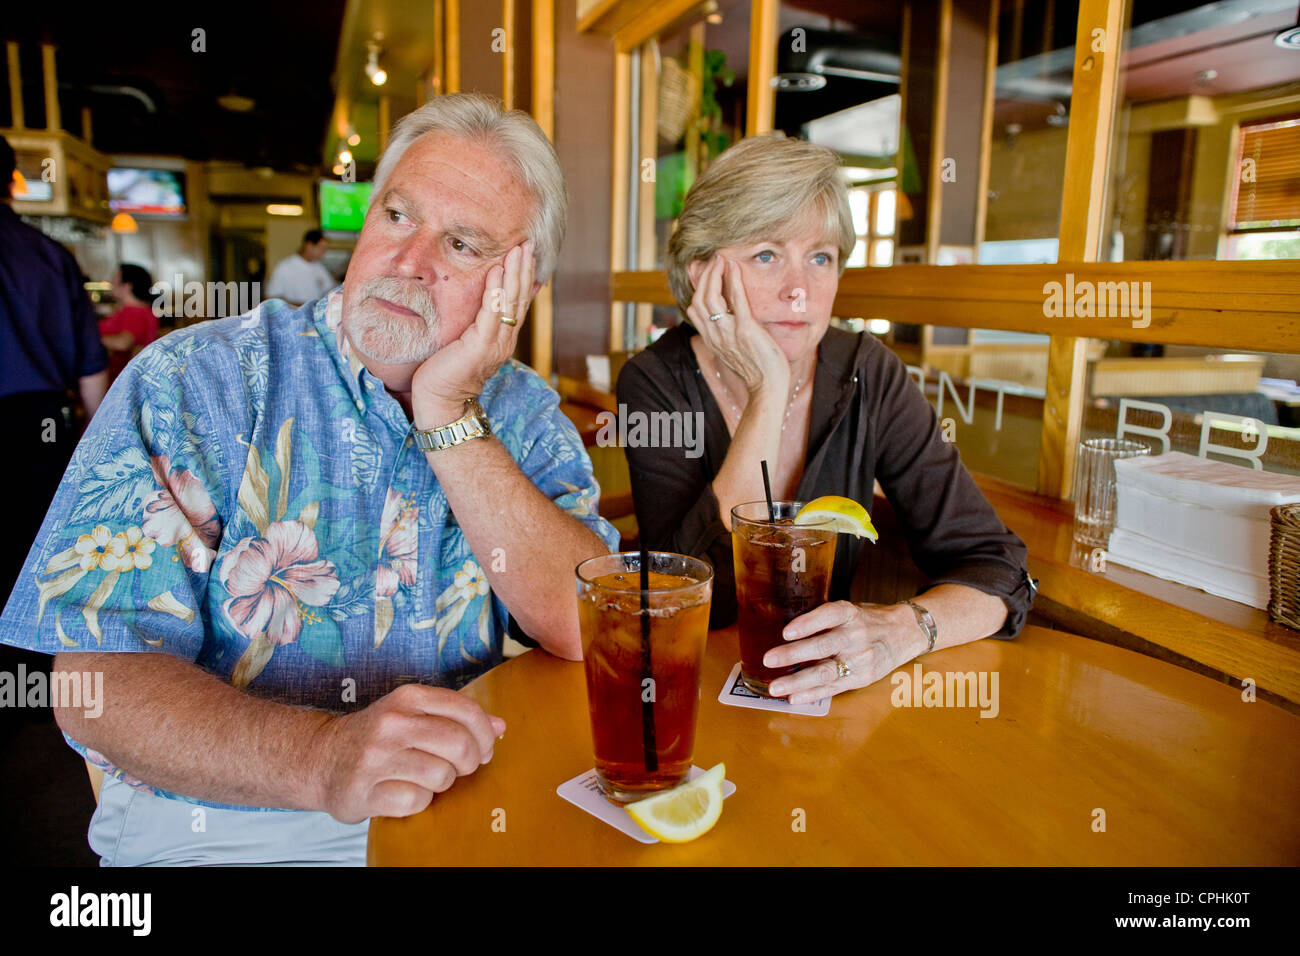 Ein Ehepaar mittleren Alters erschien über Eistee zusammen in einem Restaurant in Long Beach, Kalifornien, gleichgültig gegenüber anderen Unternehmen Stockfoto